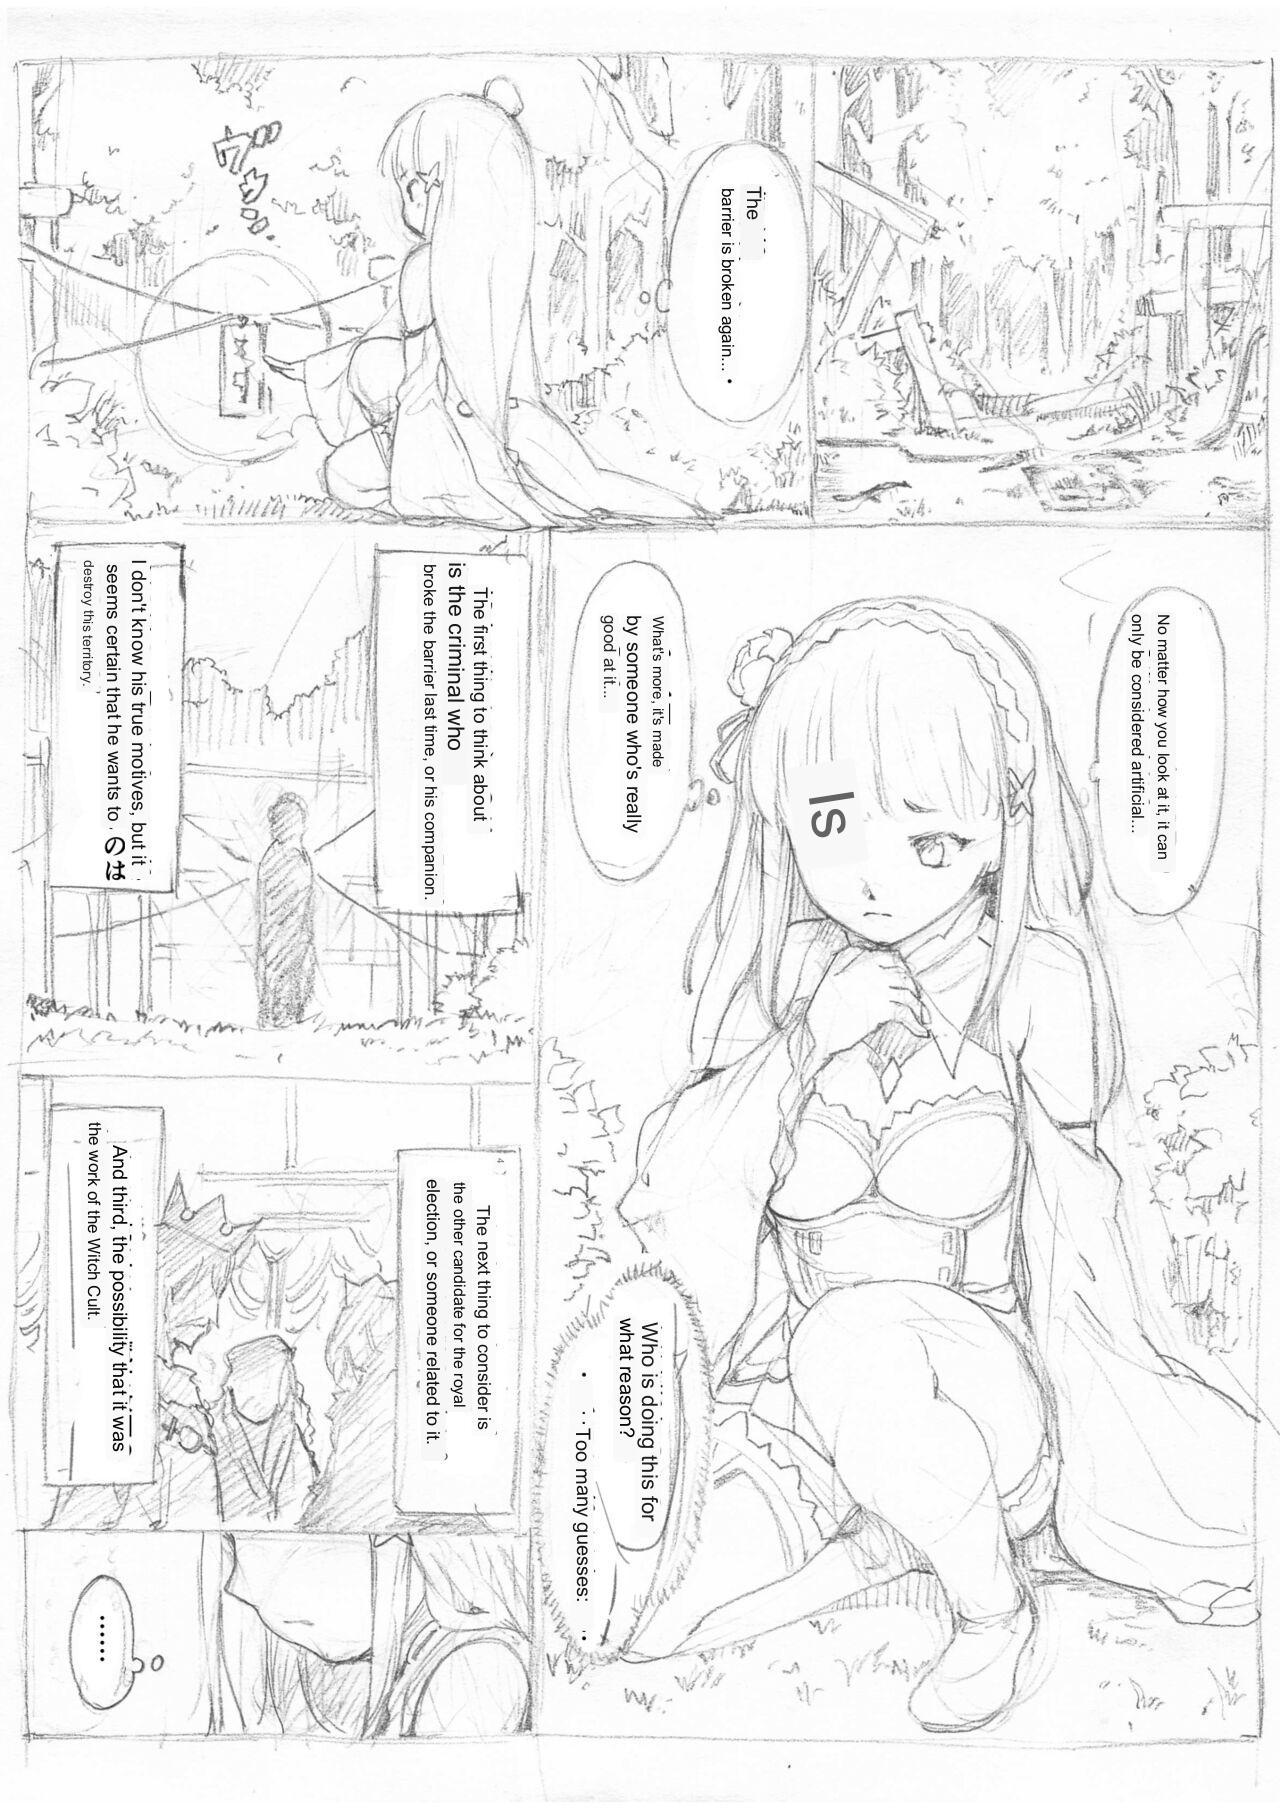 [Fujiwara Shunichi] Emilia Kumo Ito Kousoku Manga (Re: Zero kara Hajimeru Isekai Seikatsu) google translate 0